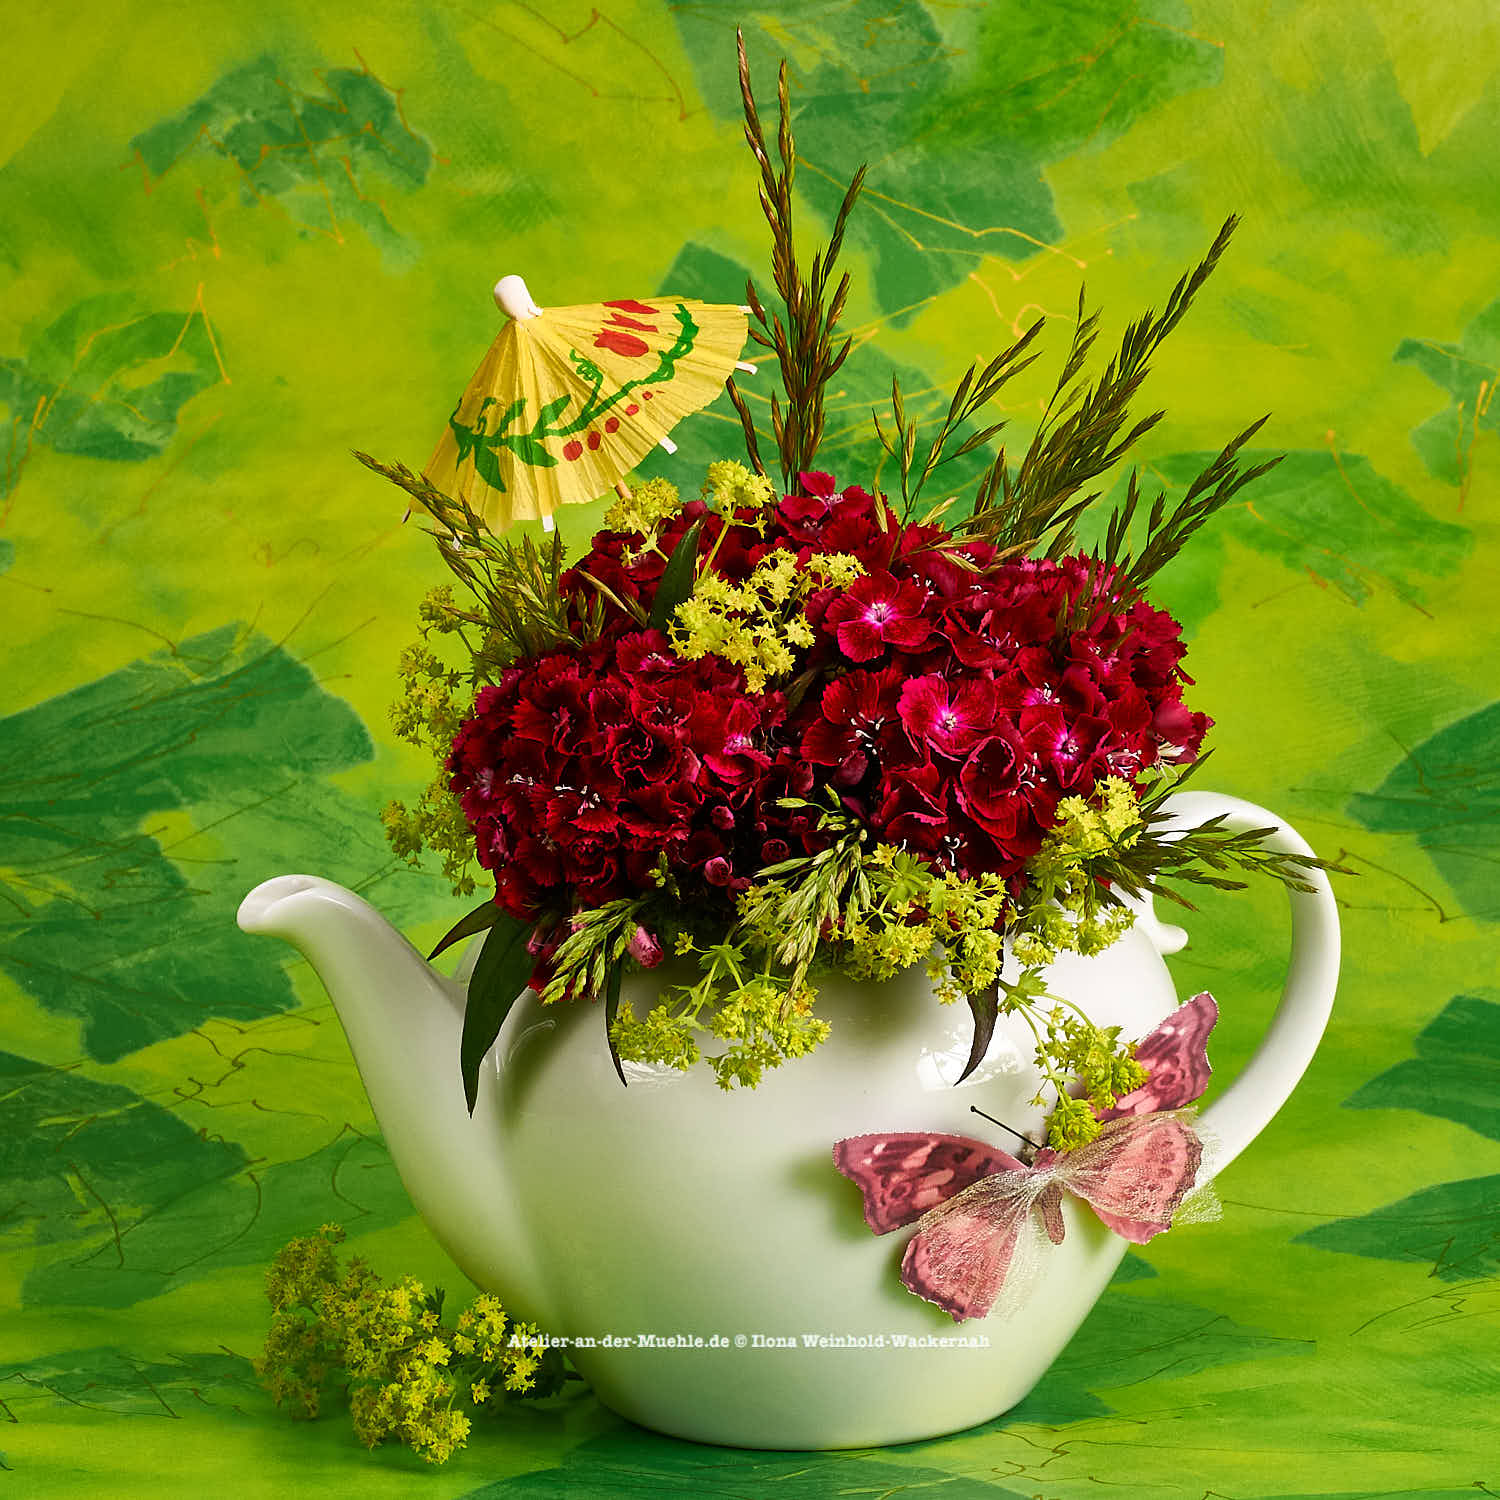 Wandbild Teeblumen Kanne mit Nelken – Atelier An der Mühle